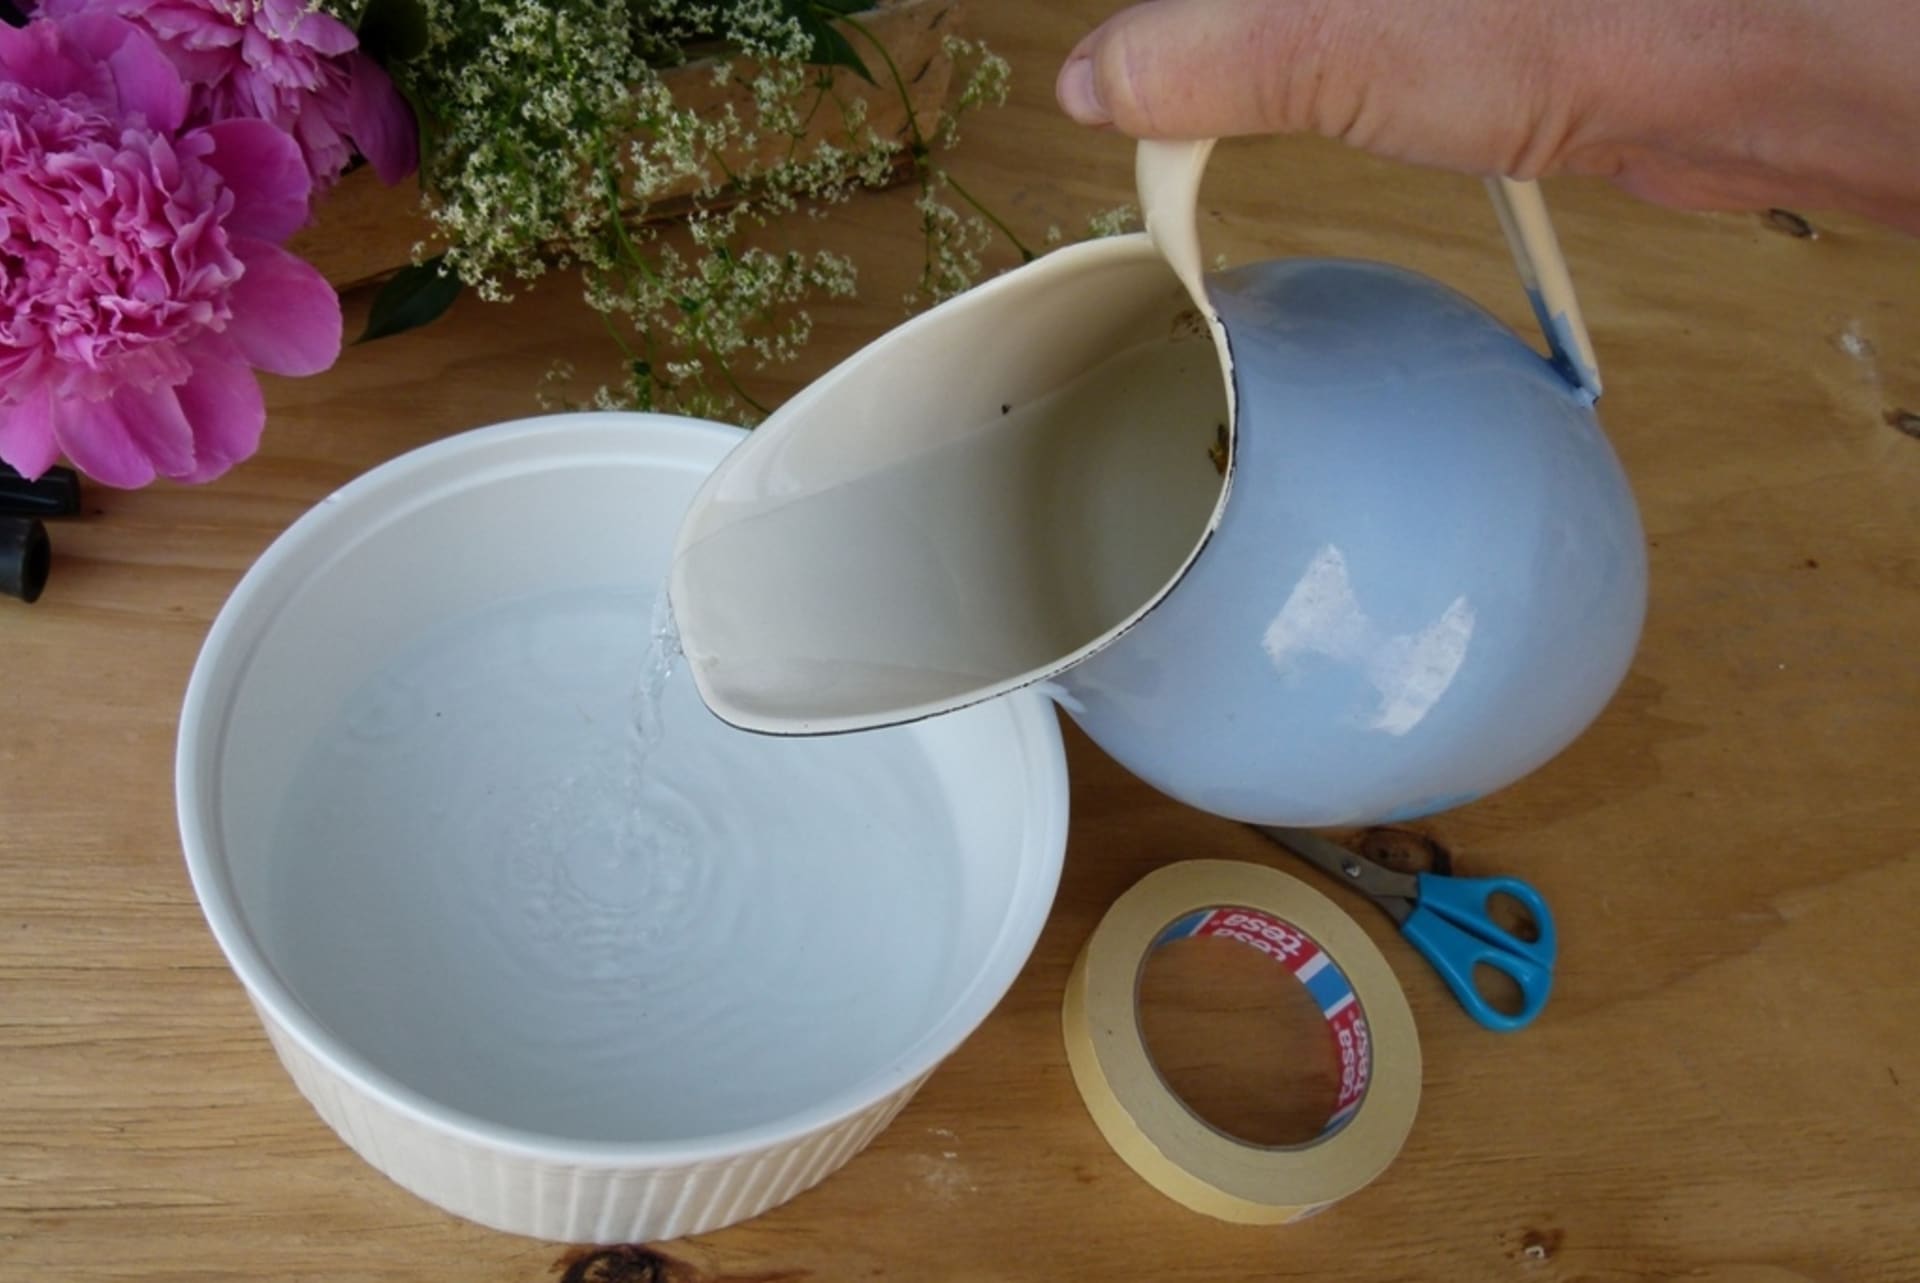 Použijte těžší mísu porcelánovou, ne z umělé hmoty